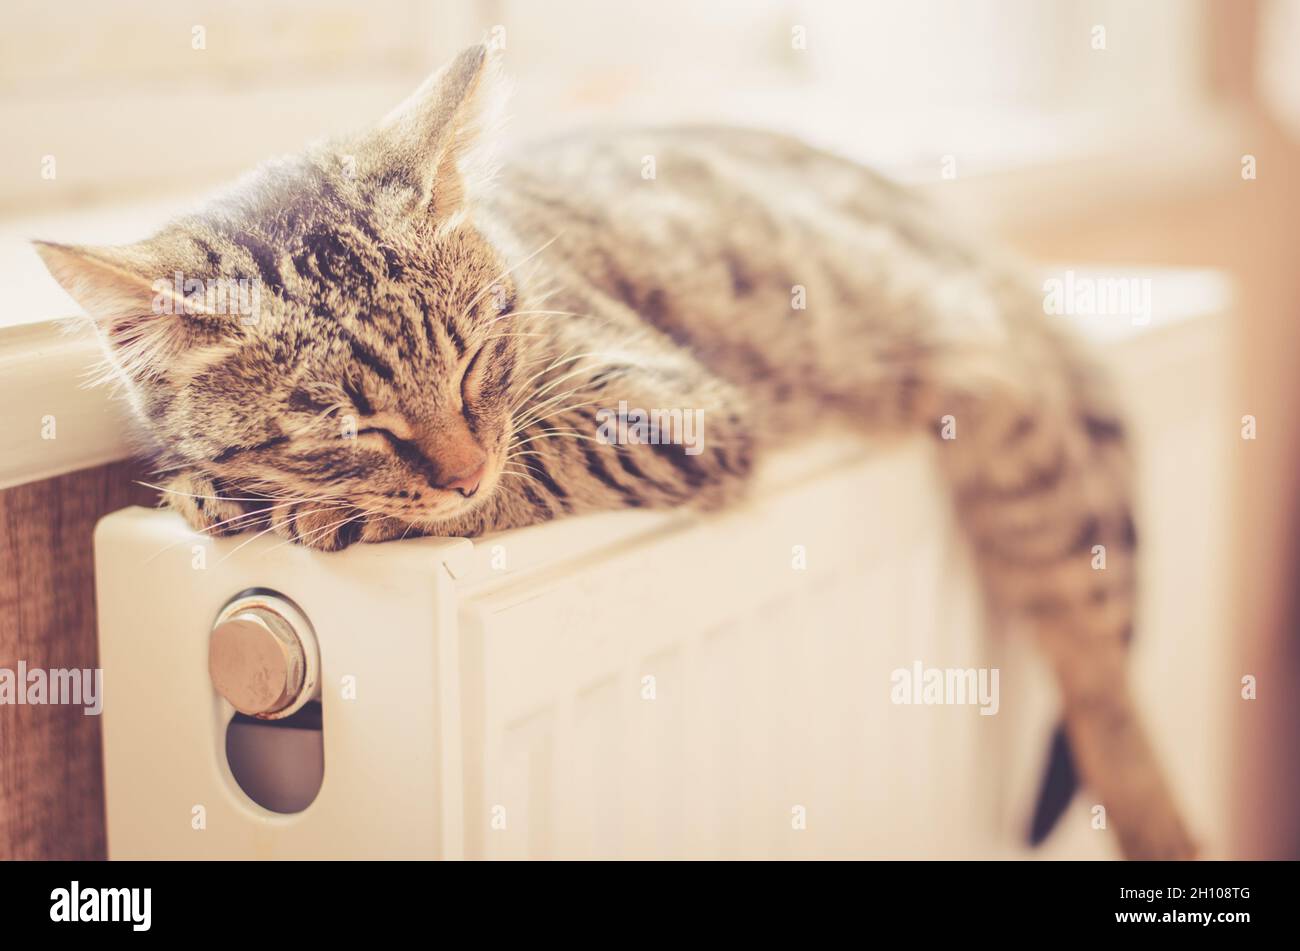 Beau chaton tabby dort sur le radiateur près de la fenêtre au soleil.Le chat repose sur un radiateur chaud Banque D'Images